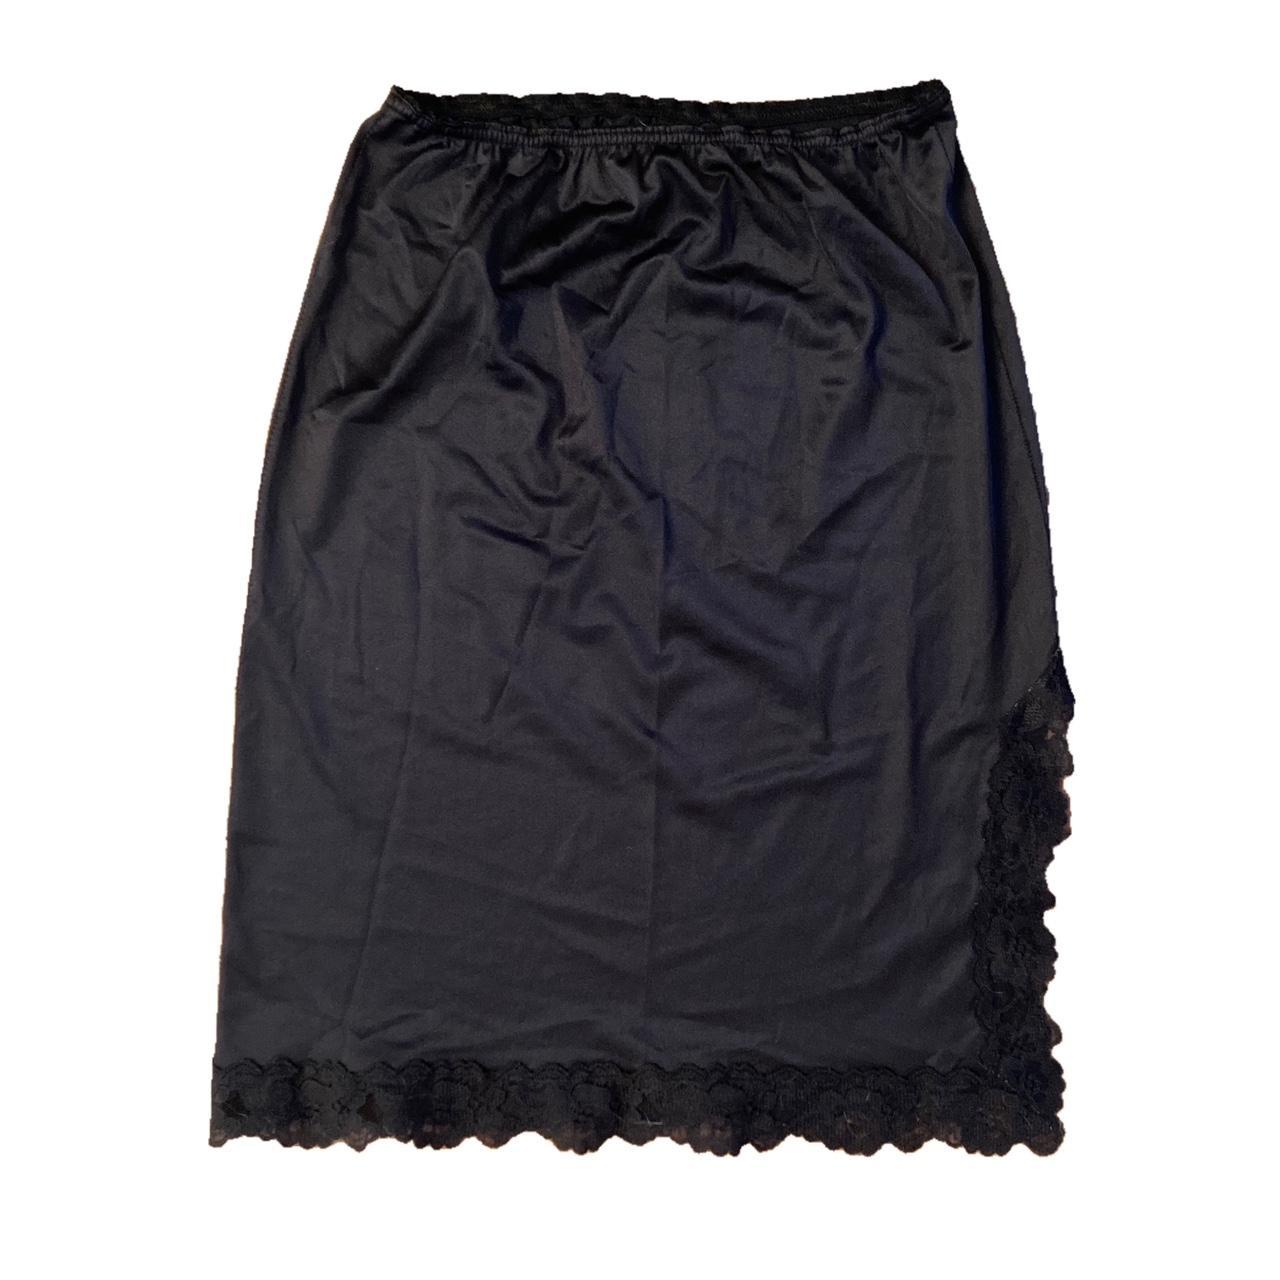 Vintage 90s black lace Slip midi skirt Beautiful... - Depop